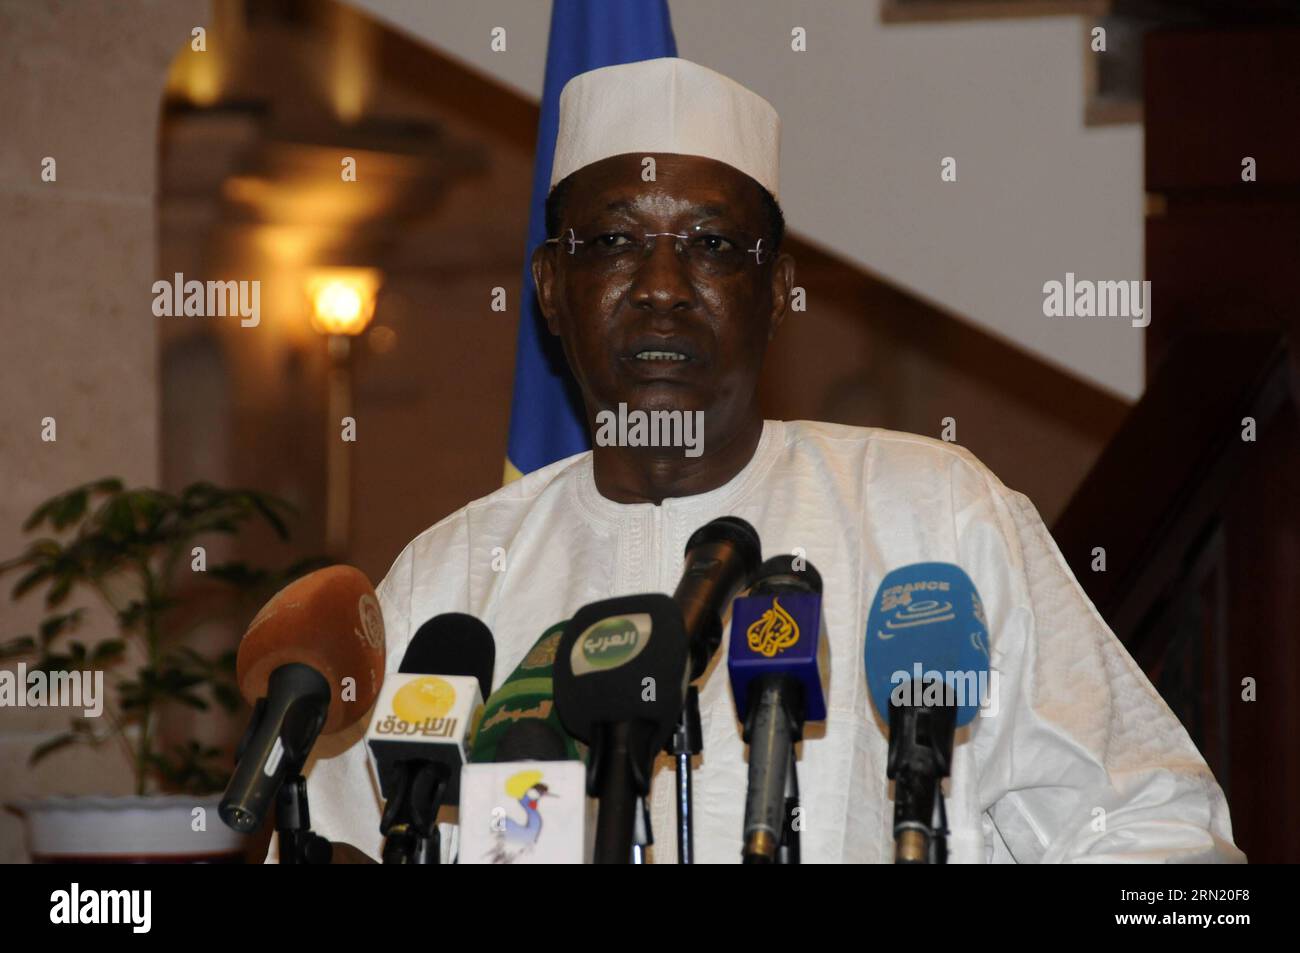 (150128) -- KHARTOUM, 28 janvier 2015 -- le président tchadien Idriss Deby et son homologue soudanais Omar al-Bashir (absent de la photo) assistent à une conférence de presse après leur rencontre à Khartoum, Soudan, le 28 janvier 2015. Le Soudan et le Tchad ont exprimé mercredi leurs préoccupations concernant les situations en Libye, au Soudan du Sud, en République centrafricaine et au Nigeria, ainsi que le conflit dans la région du Darfour au Soudan. SOUDAN-KHARTOUM-PRESIDENT-MEETING MohammedxBabiker PUBLICATIONxNOTxINxCHN Khartoum Jan 28 2015 le président tchadien Idriss Deby et sa partie soudanaise Omar Al Bashir pas sur la photo assistent à une conférence de presse Banque D'Images